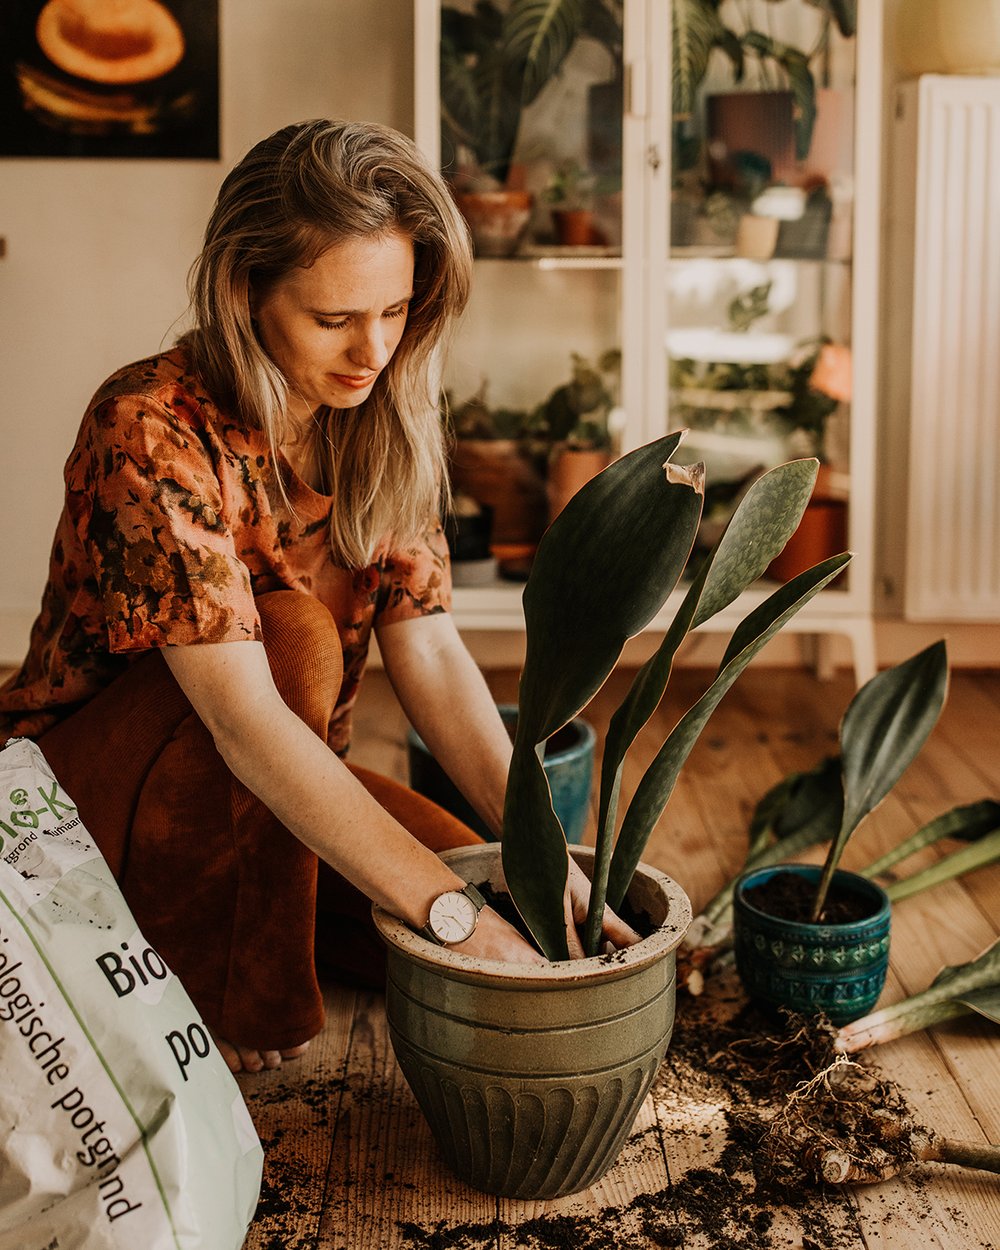 Uitrusting Ruilhandel klep Kun je planten zonder binnenpot in een dichte pot verpotten? — Mama Botanica